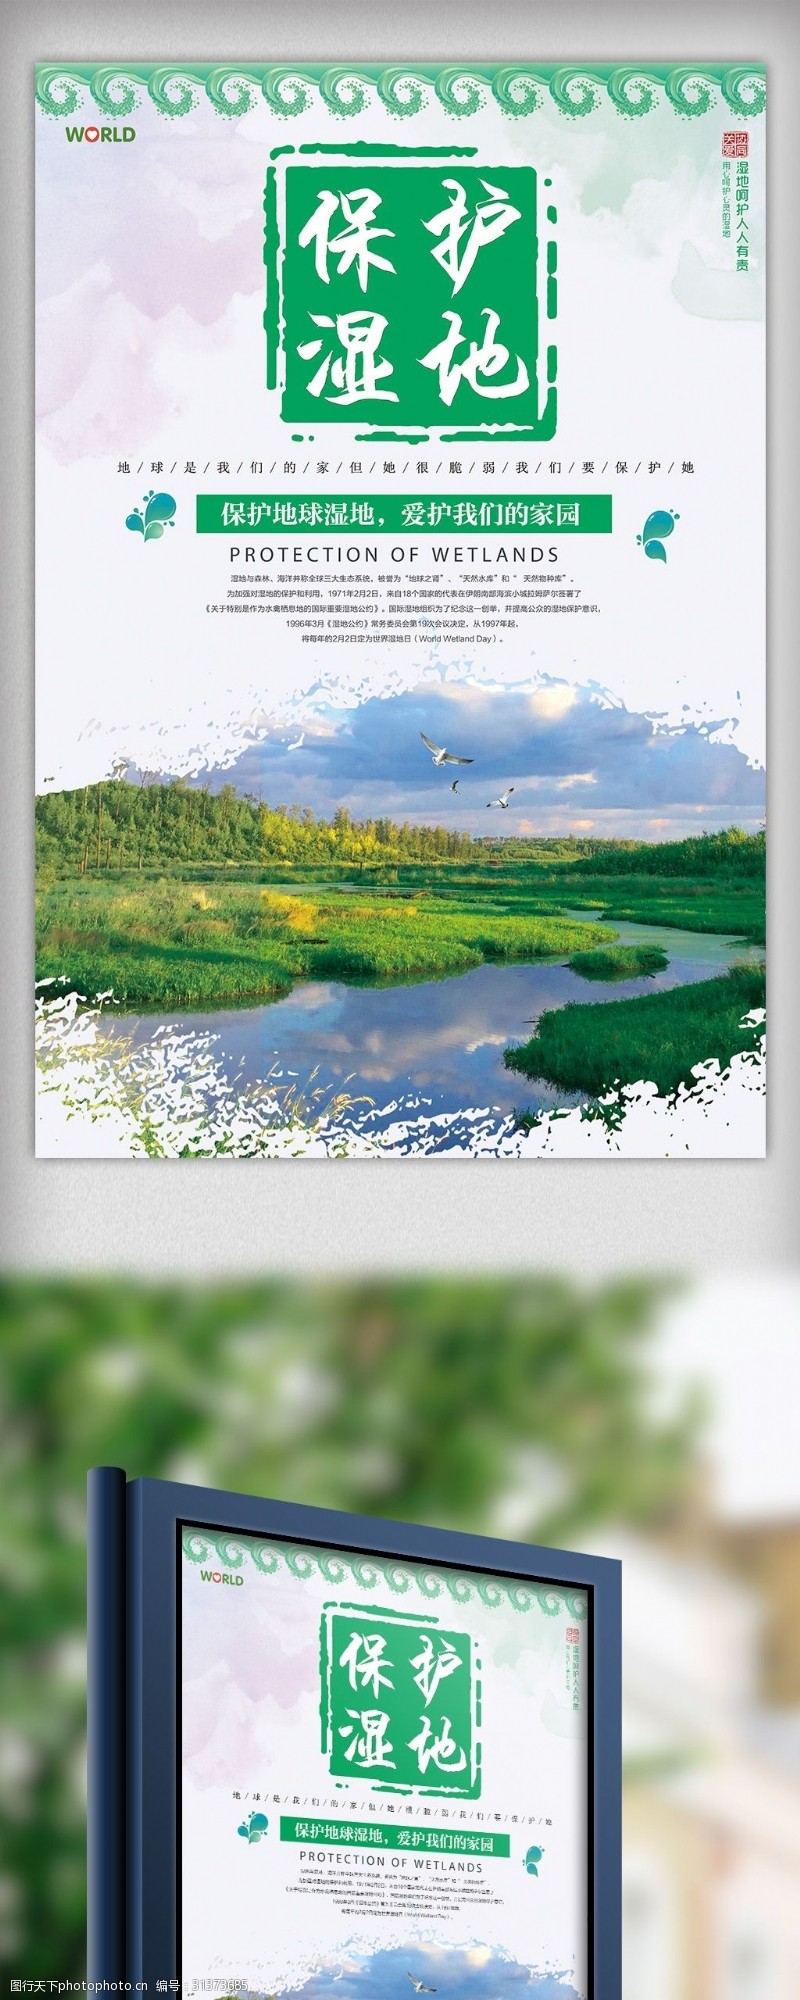 世界湿地日绿色简约保护湿地宣传海报